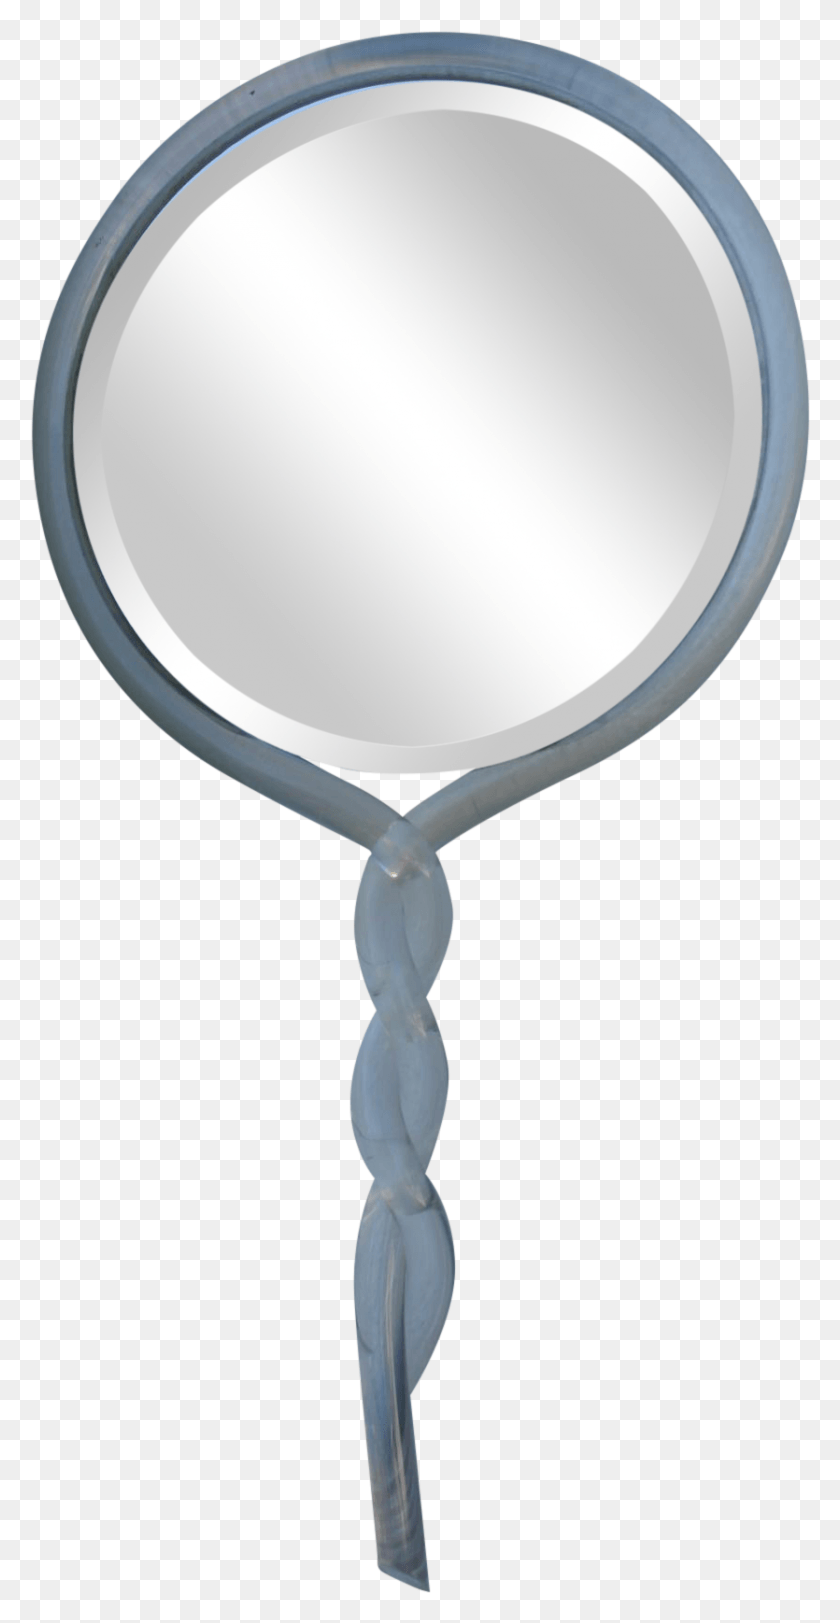 835x1674 Винтажное Ручное Зеркало Lucite, Прозрачное Ручное Зеркало, Клипарт, Лампа, Увеличительное Стекло, Hd Png Скачать